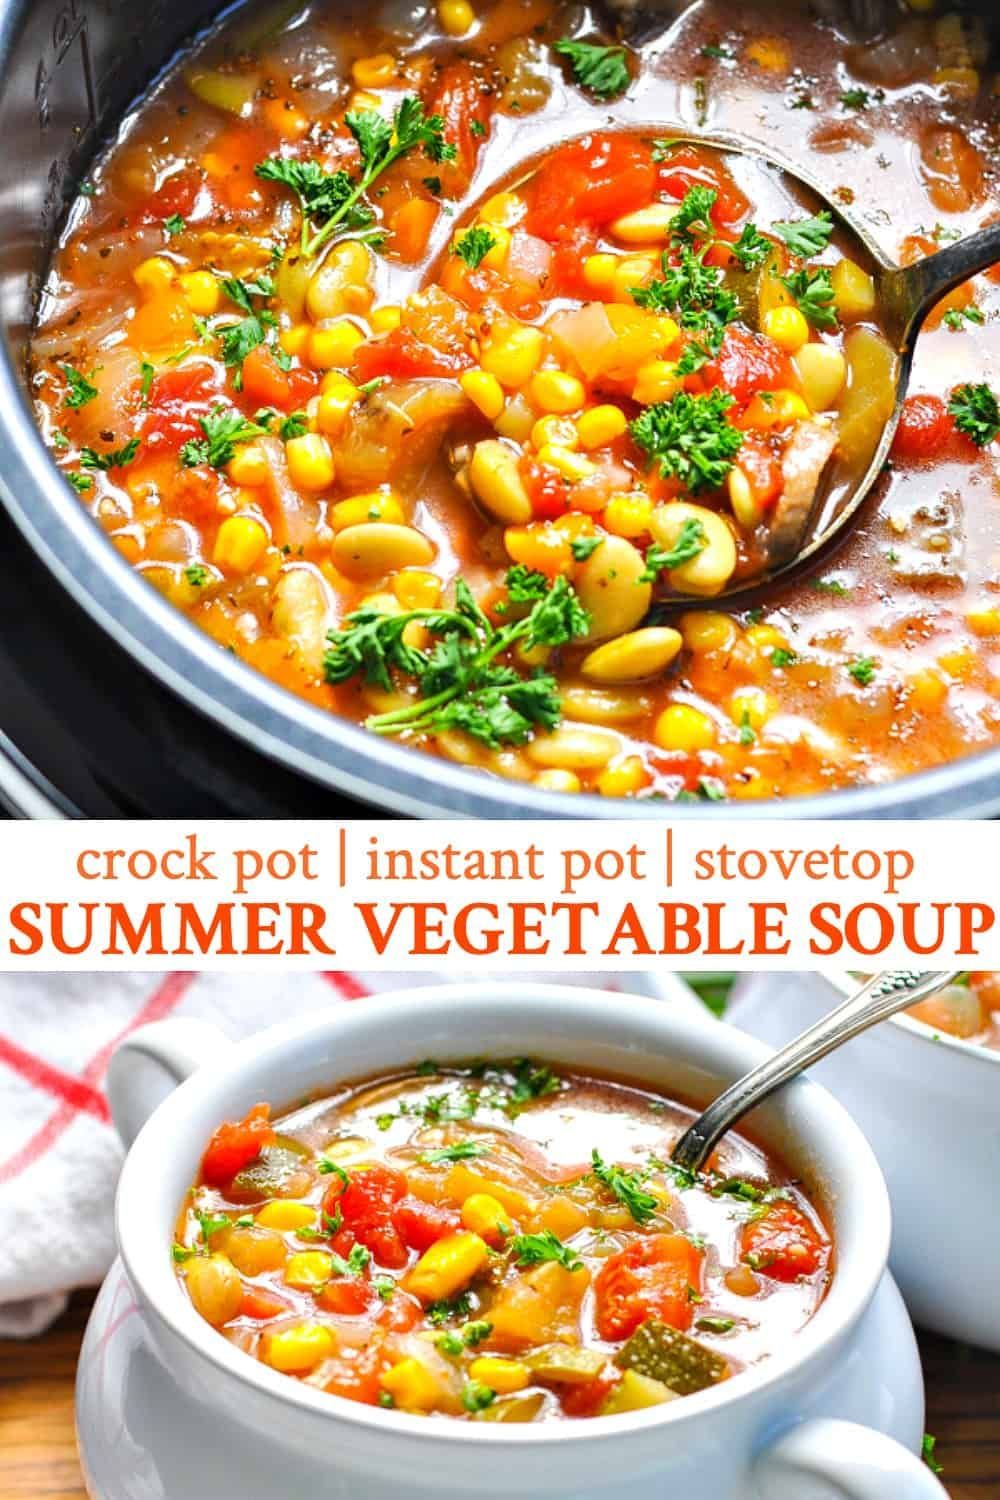 12 healthy recipes Summer crock pot ideas